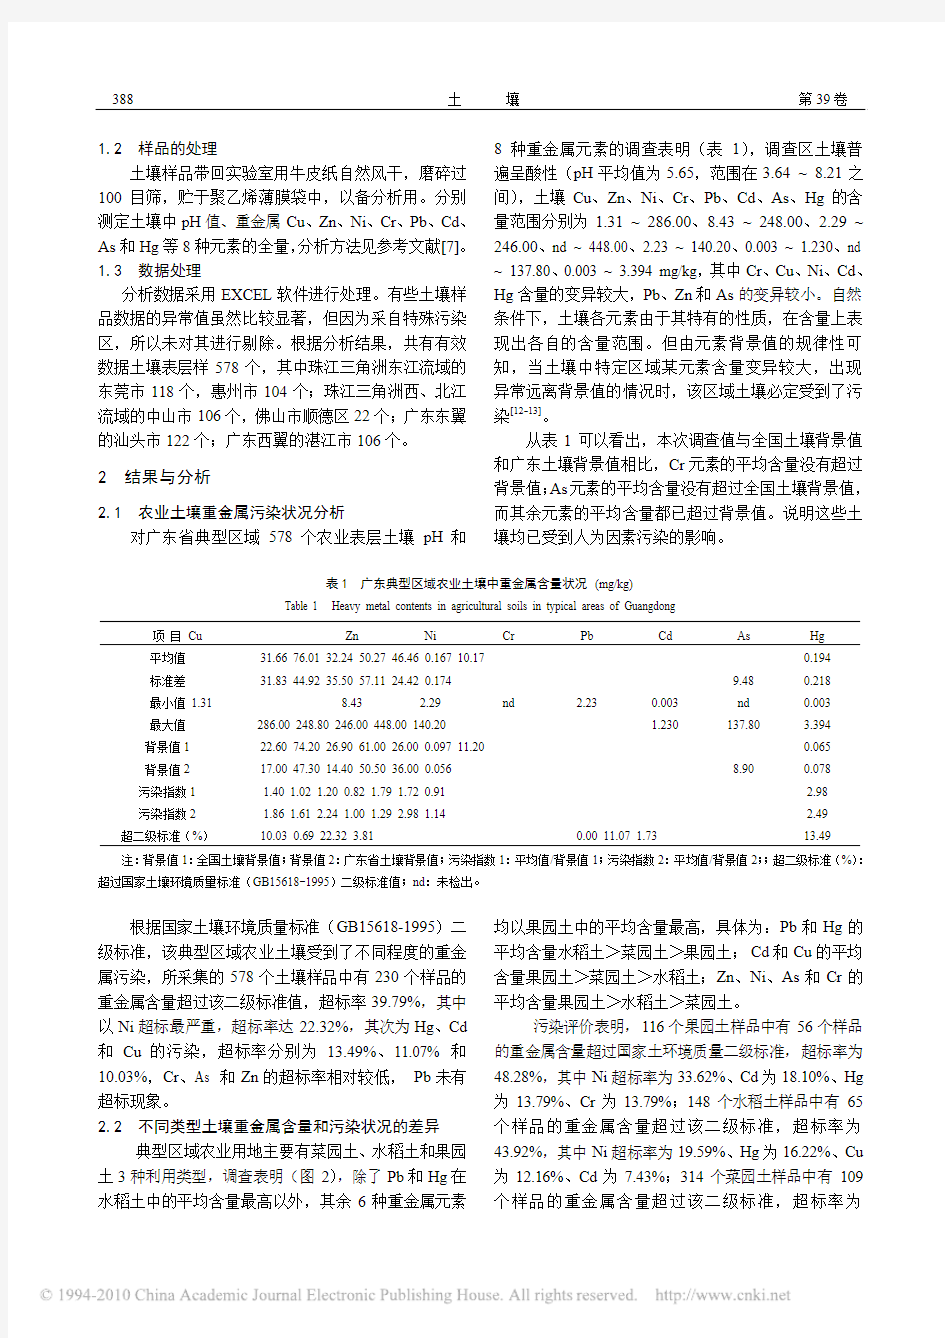 广东省典型区域农业土壤中重金属污染空间差异及原因分析